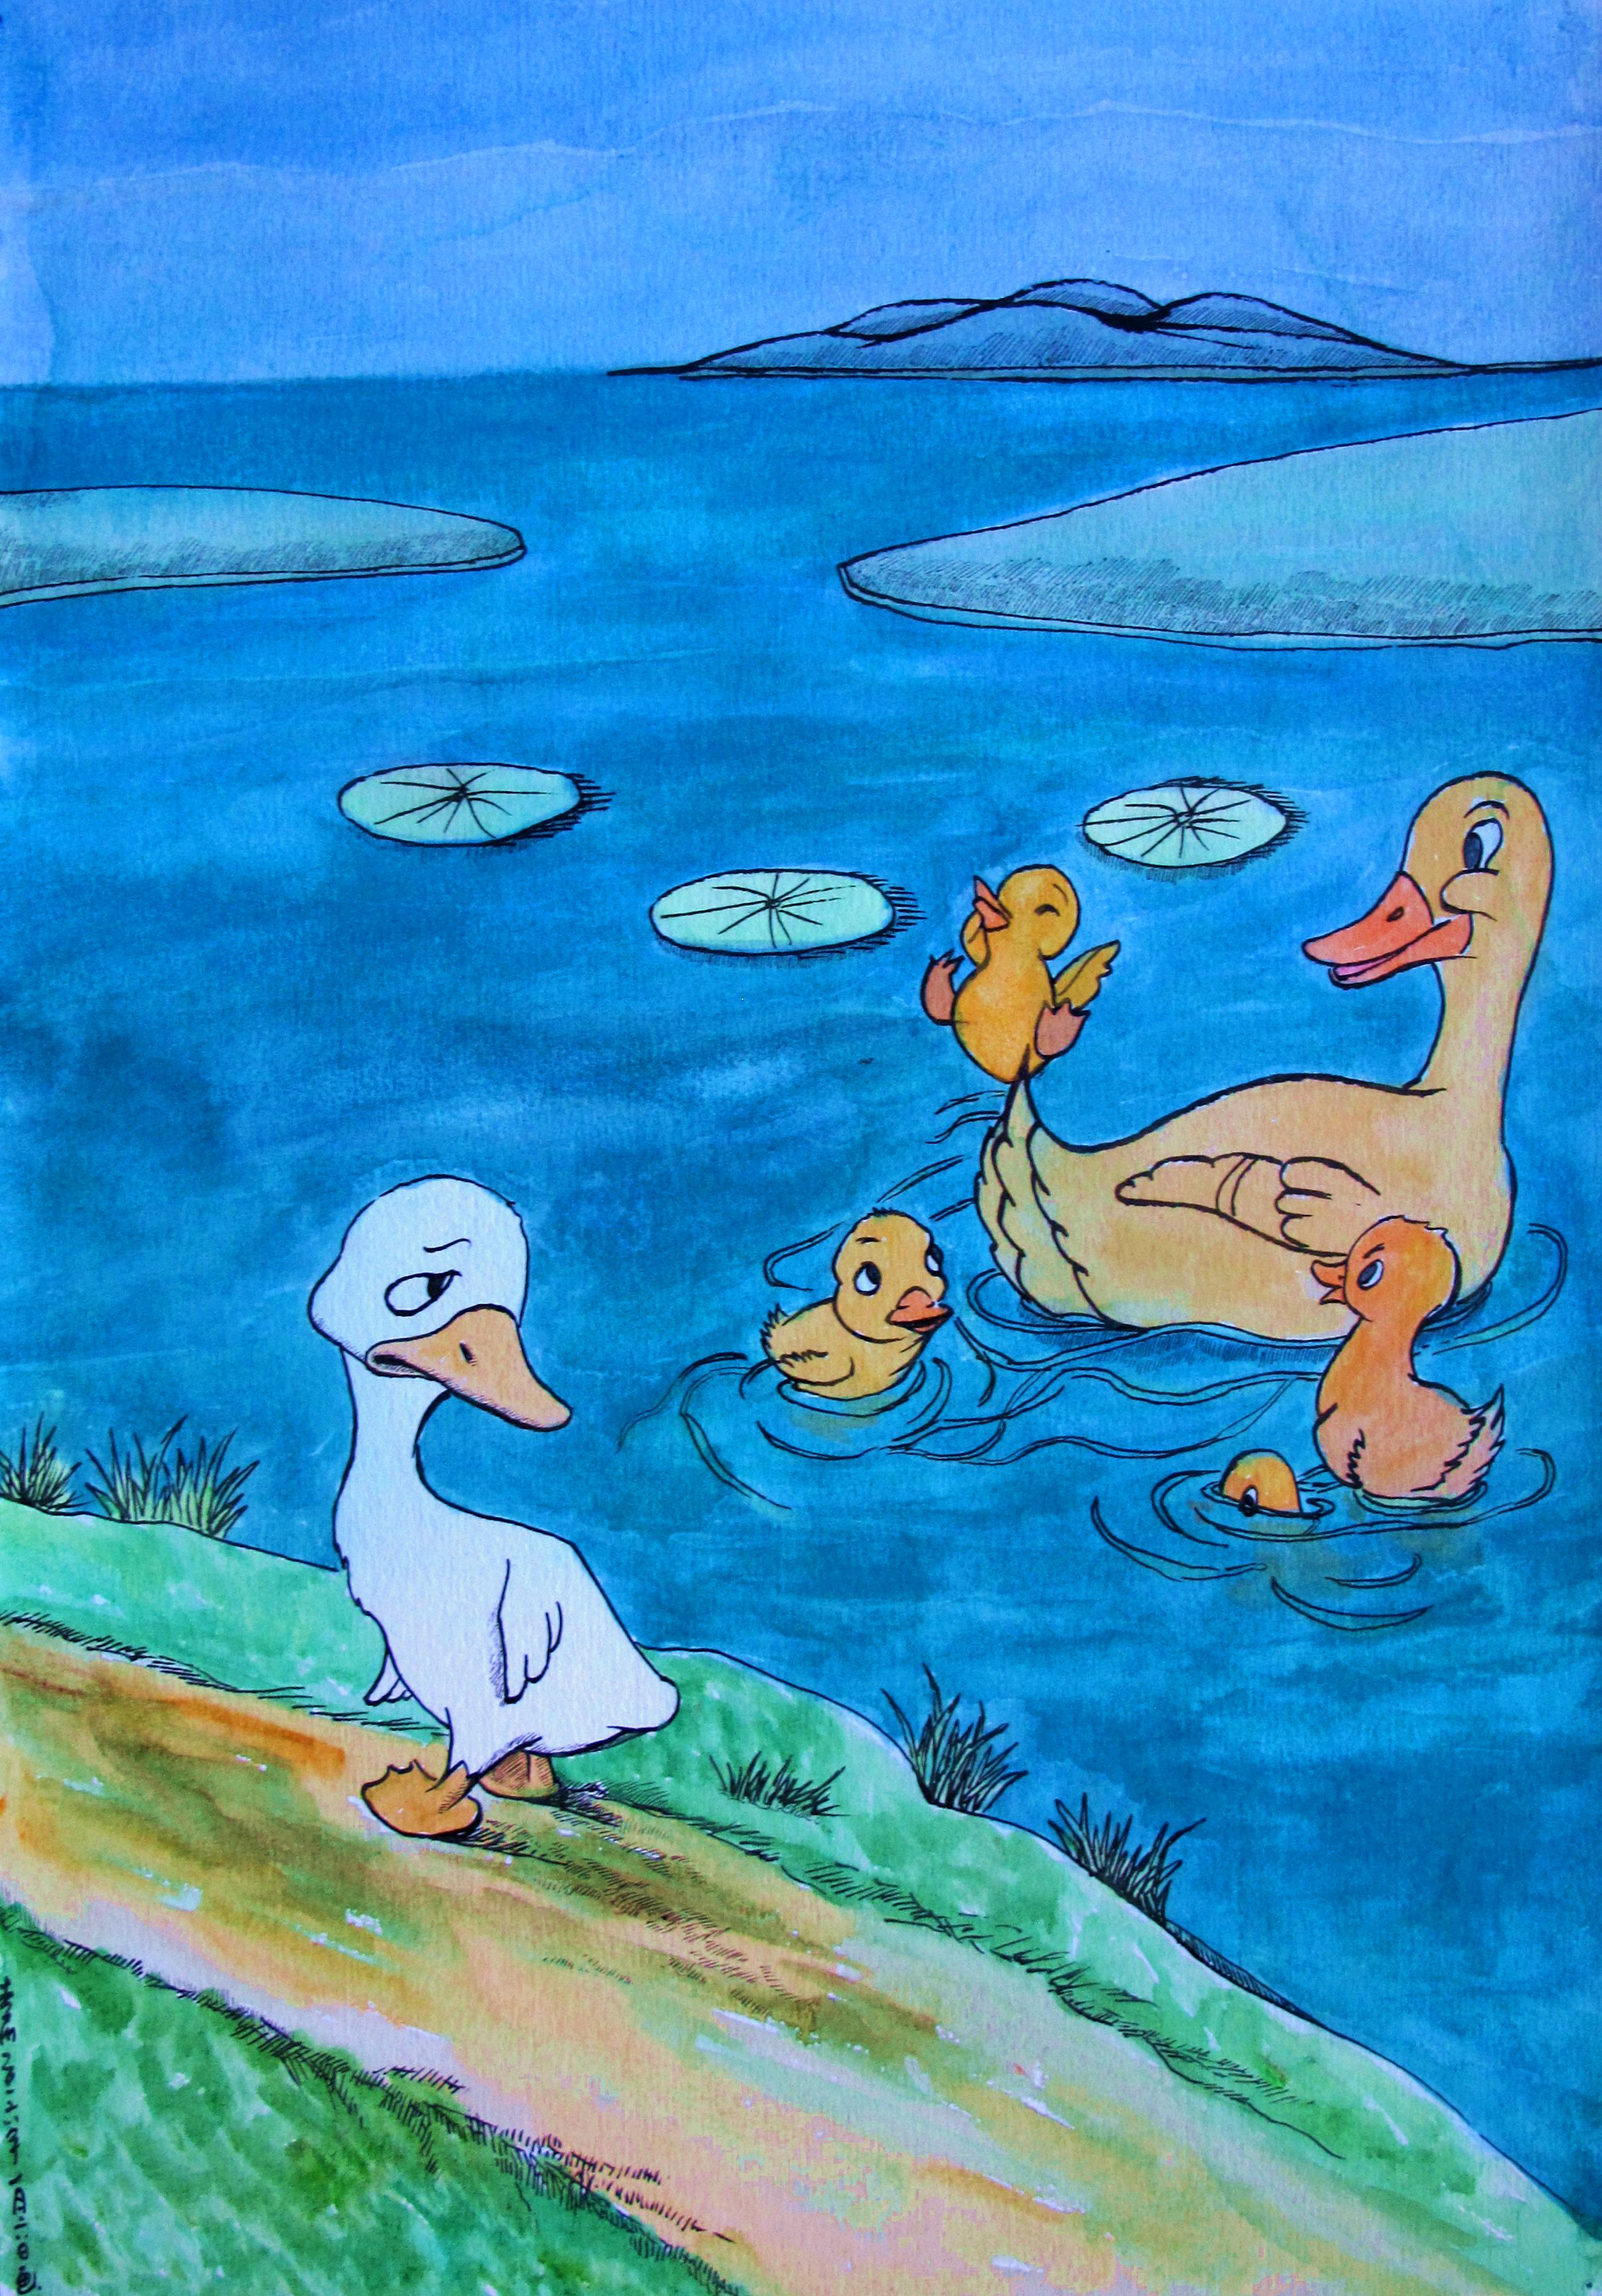 《安徒生童话》 第三章 丑小鸭